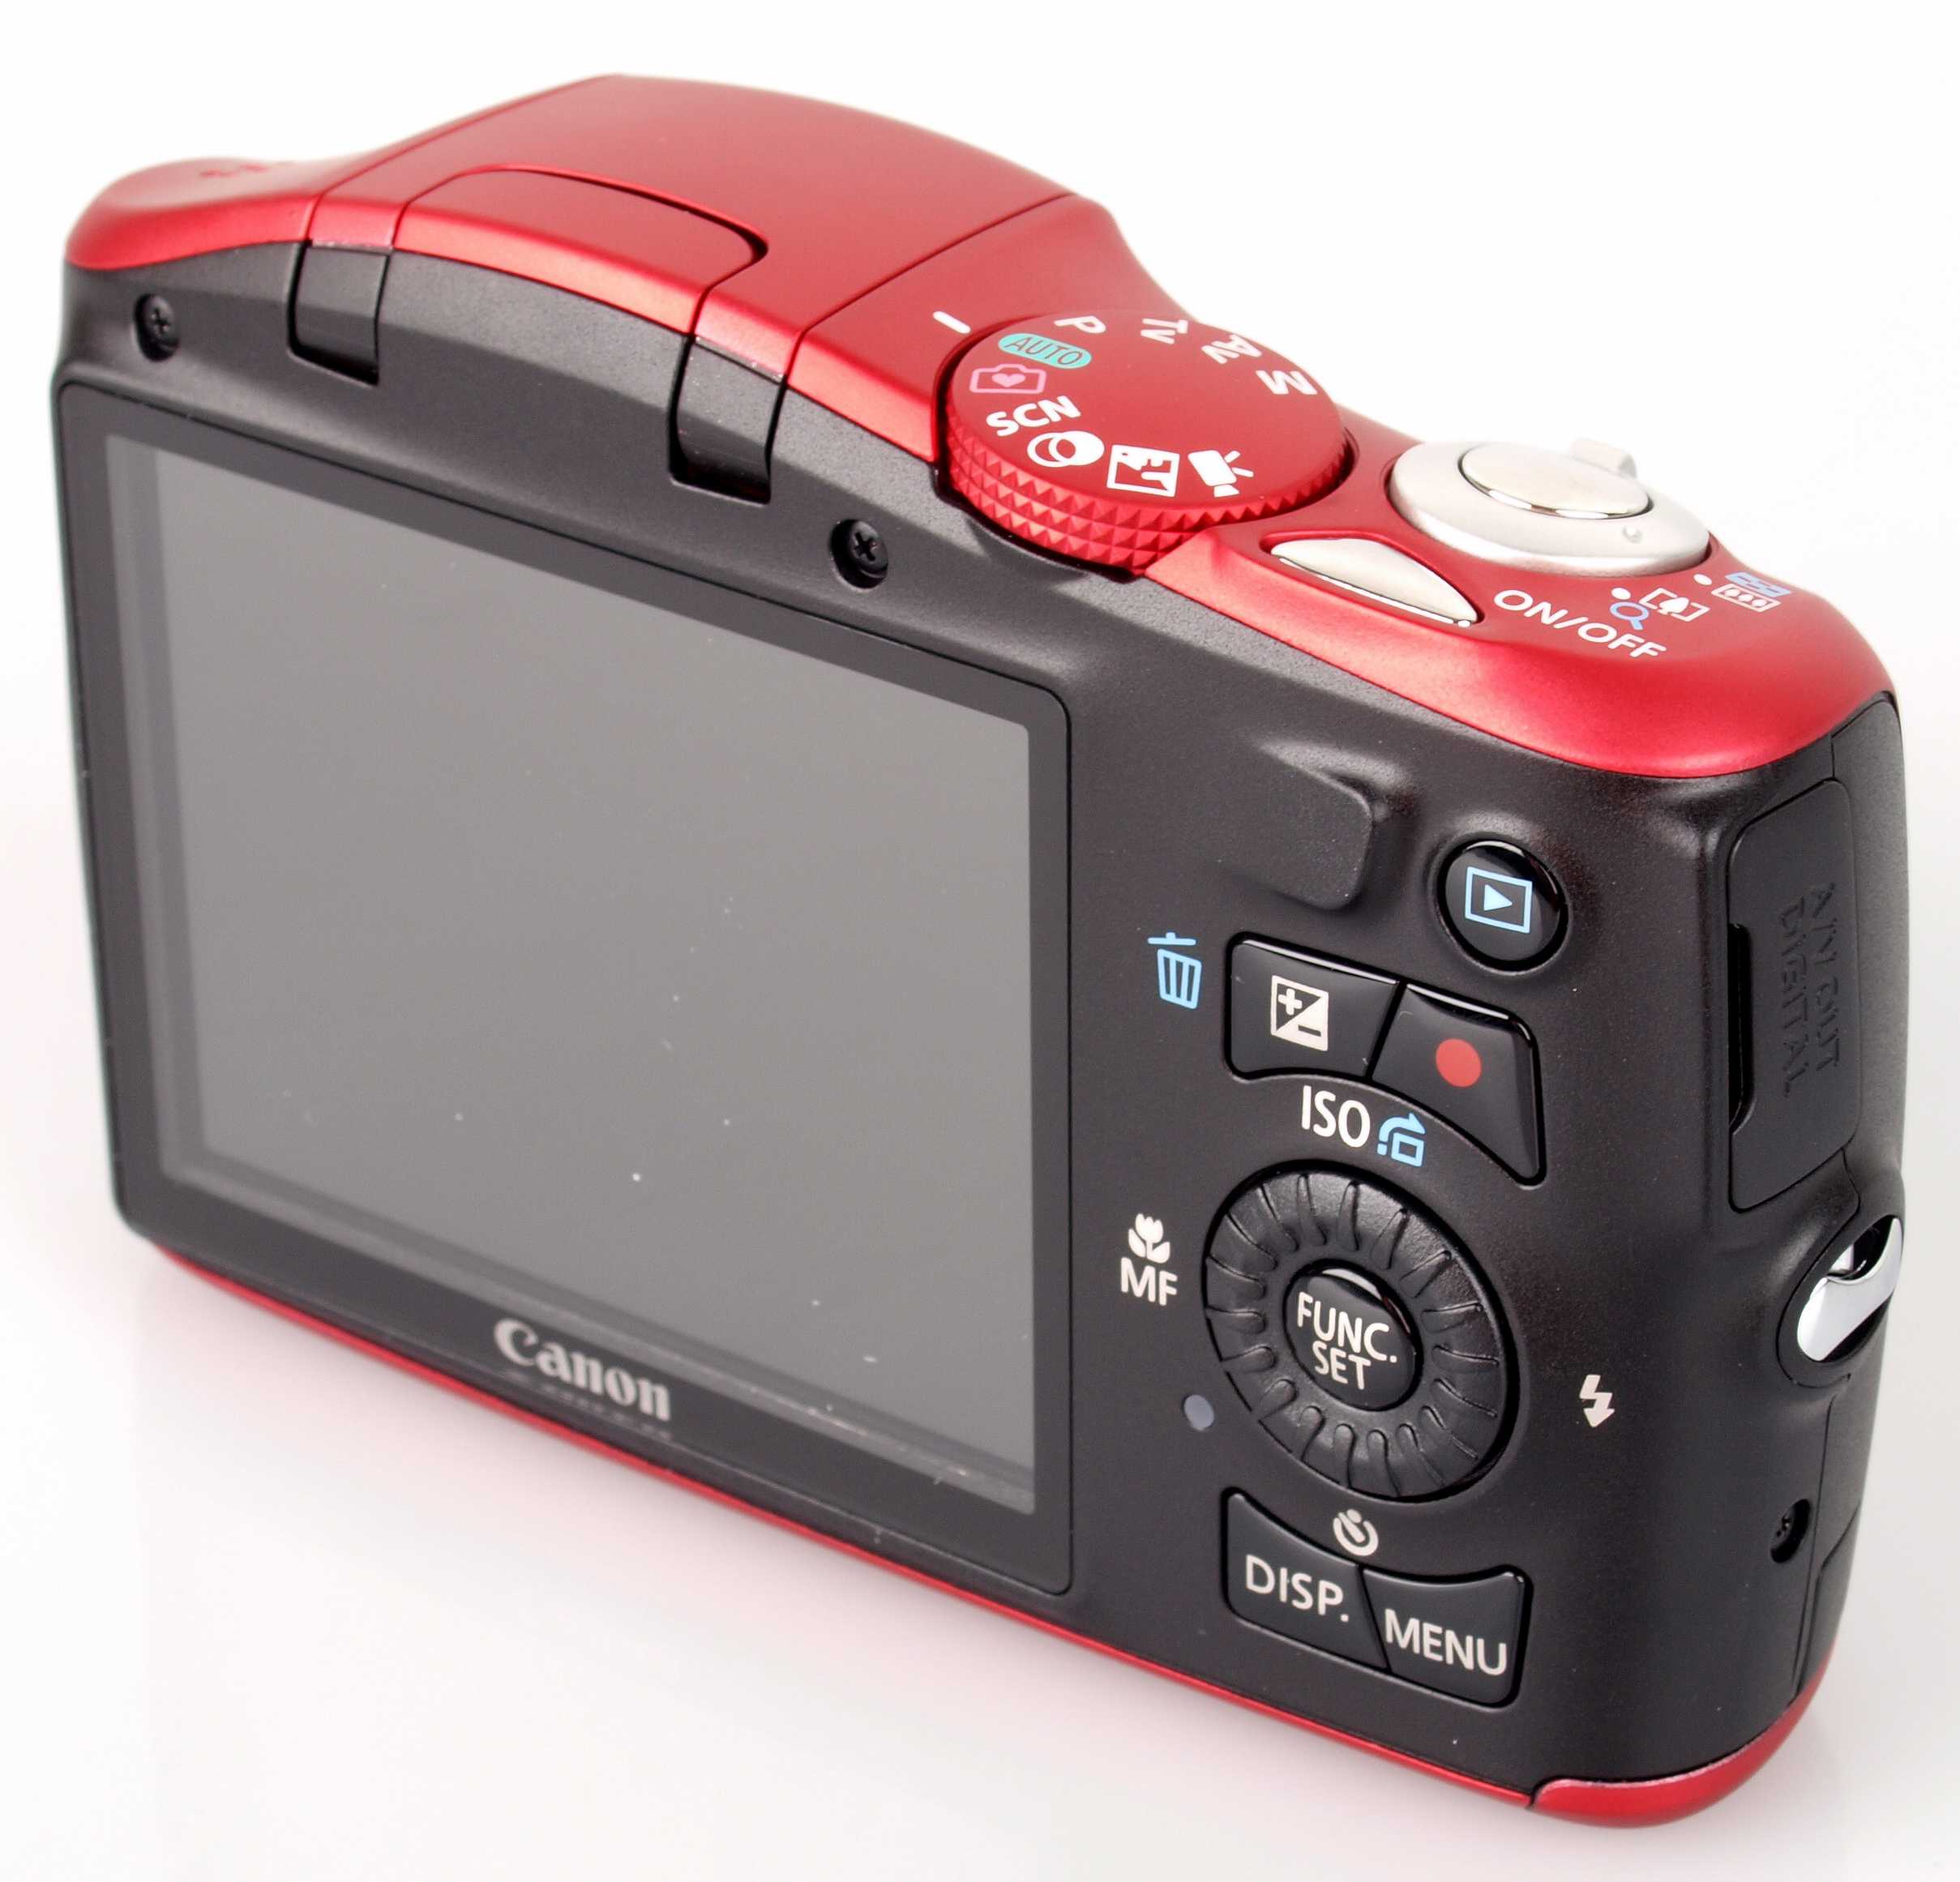 Цифровой фотоаппарат Canon PowerShot SX150 IS - подробные характеристики обзоры видео фото Цены в интернет-магазинах где можно купить цифровую фотоаппарат Canon PowerShot SX150 IS